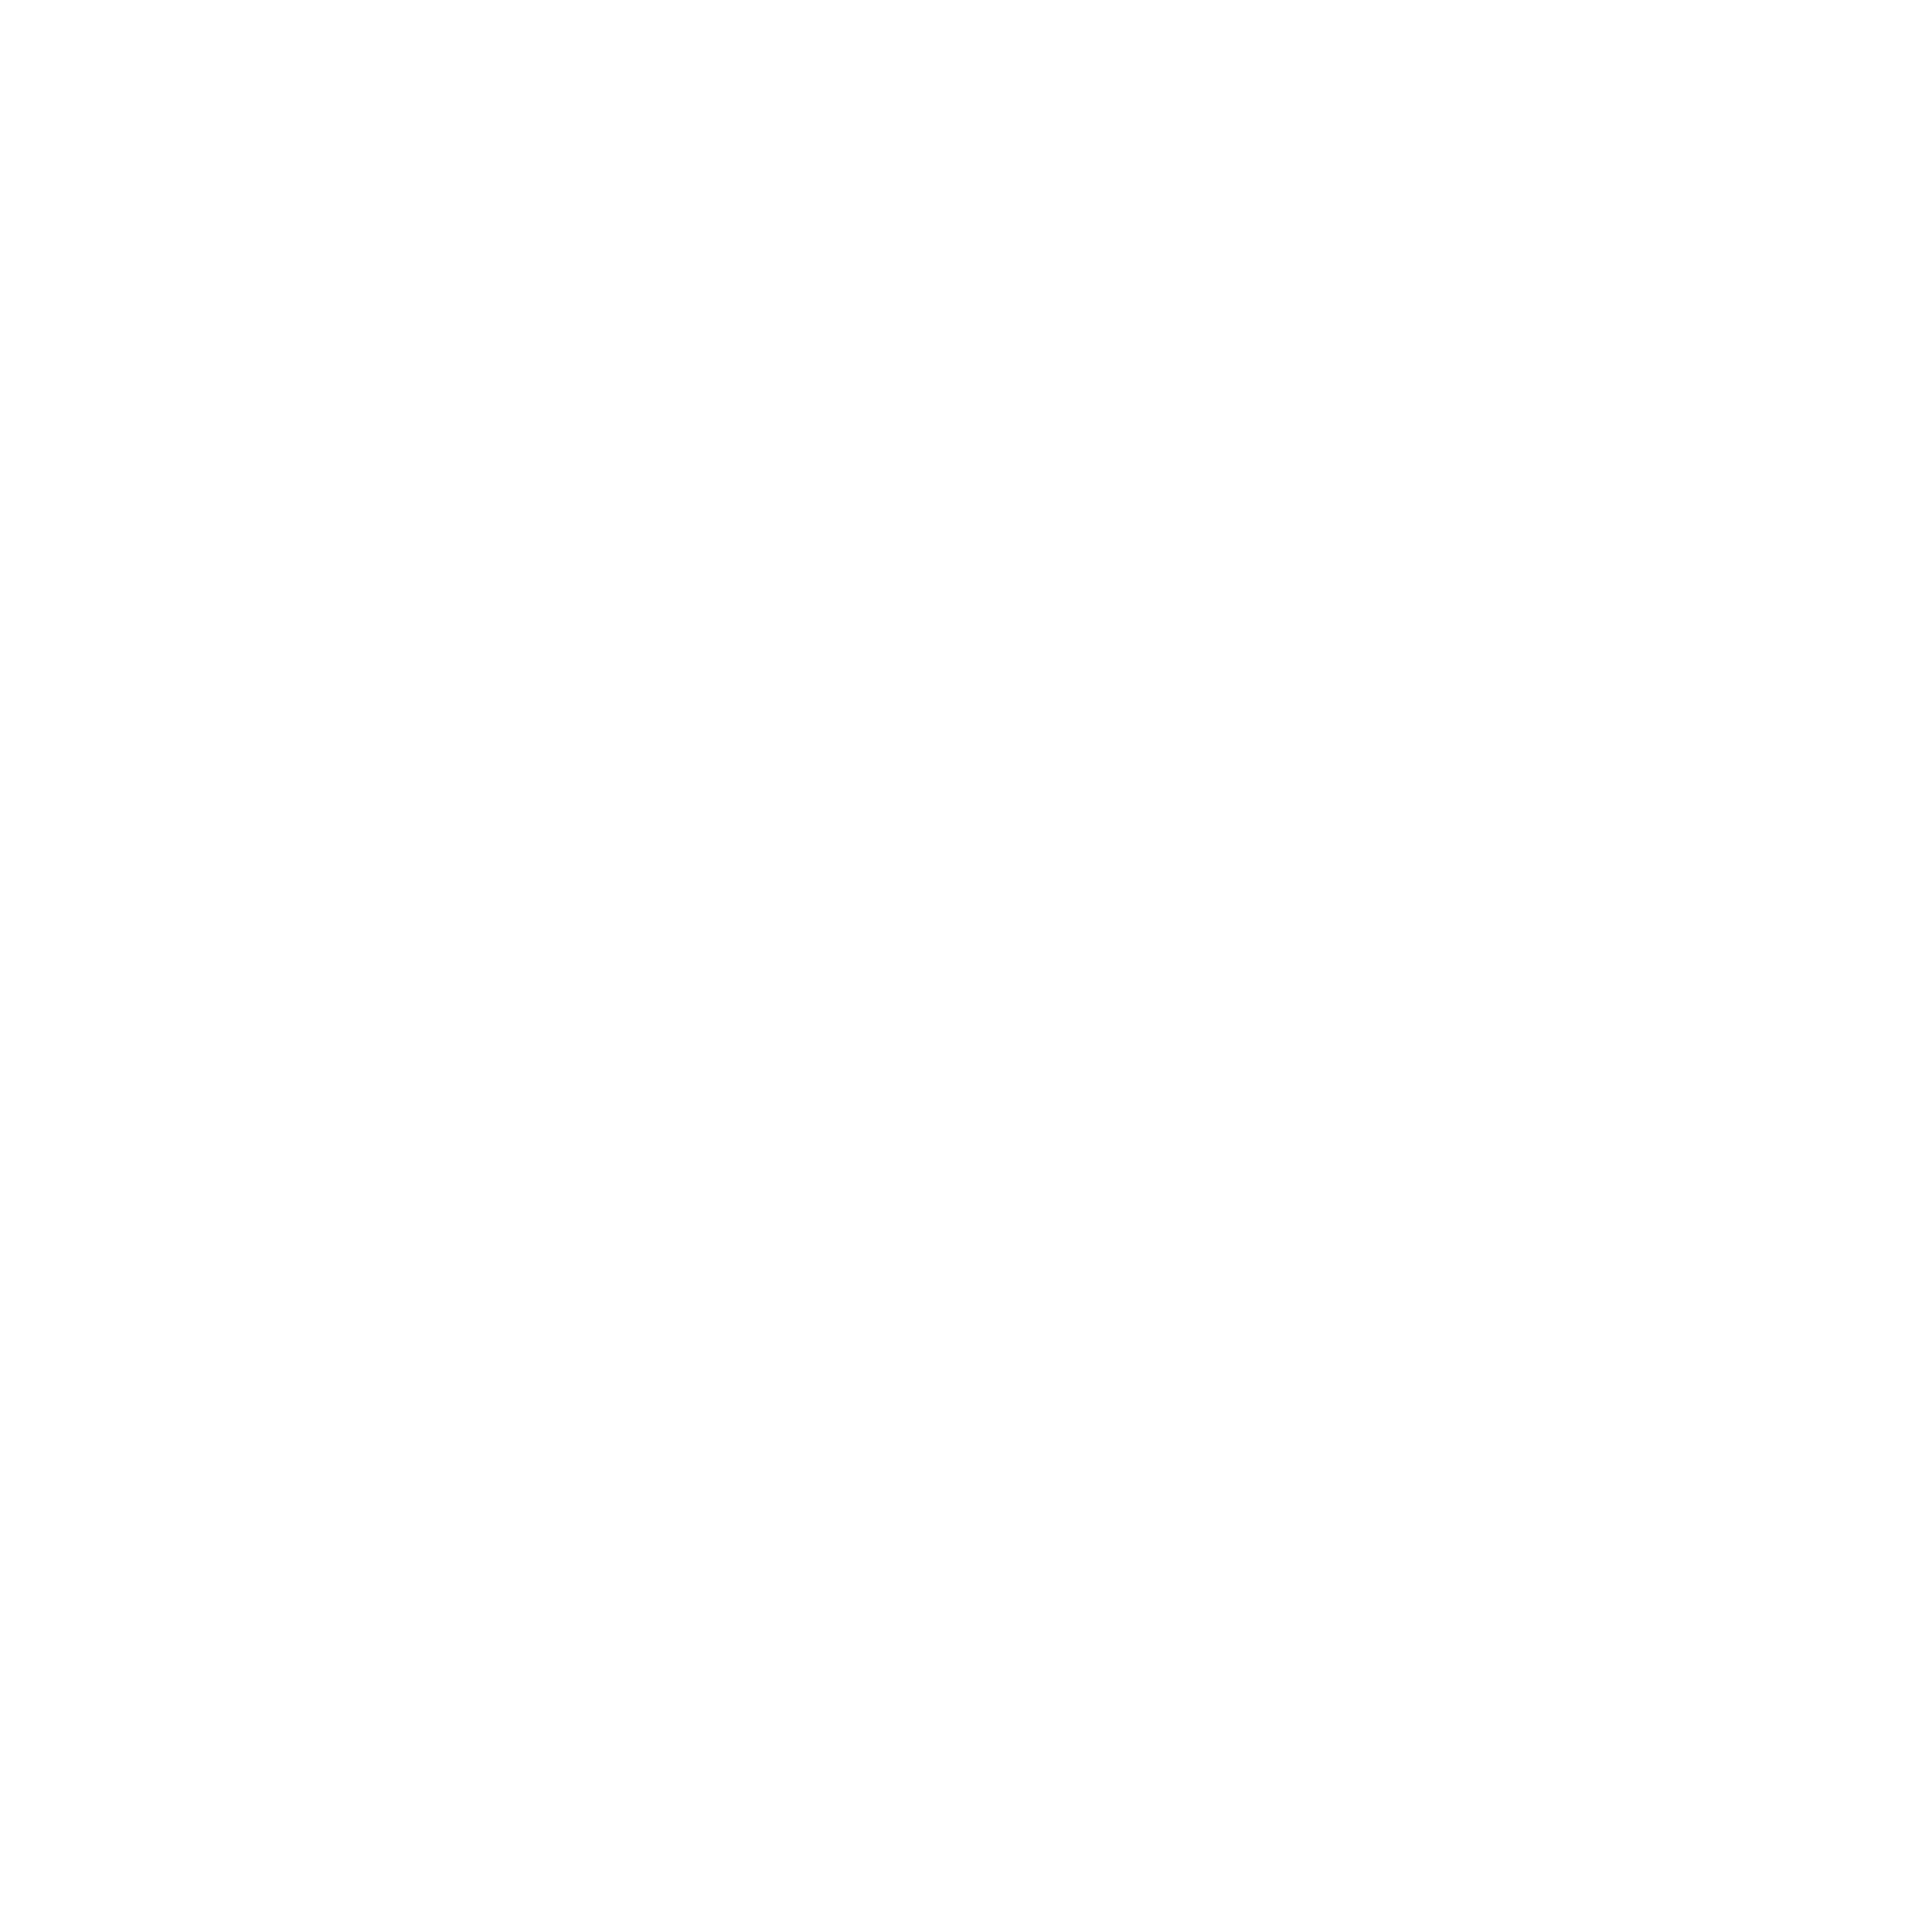 Căn hộ Swanlake Boutique Ecopark